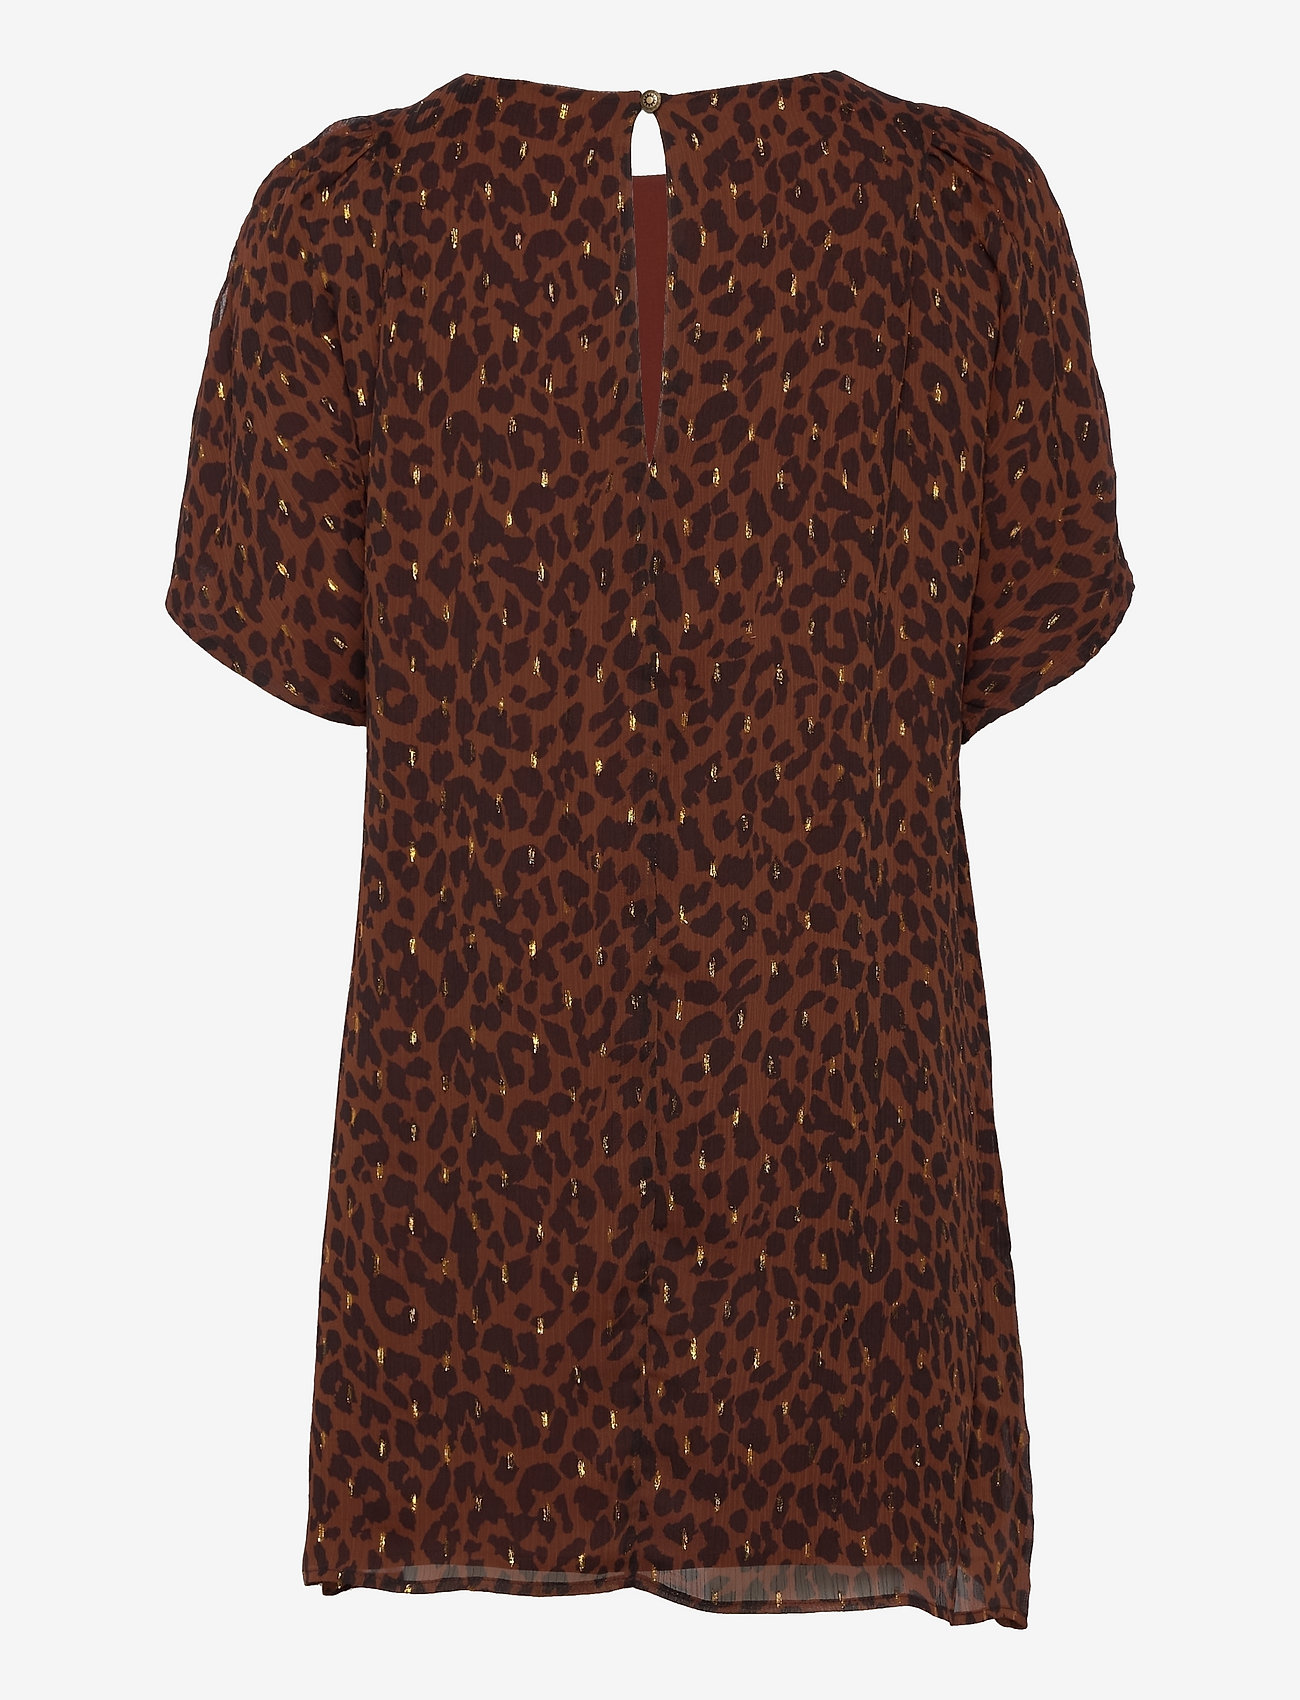 Superdry - T-Shirt Metallic Dress - minikleidid - leopard print - 1